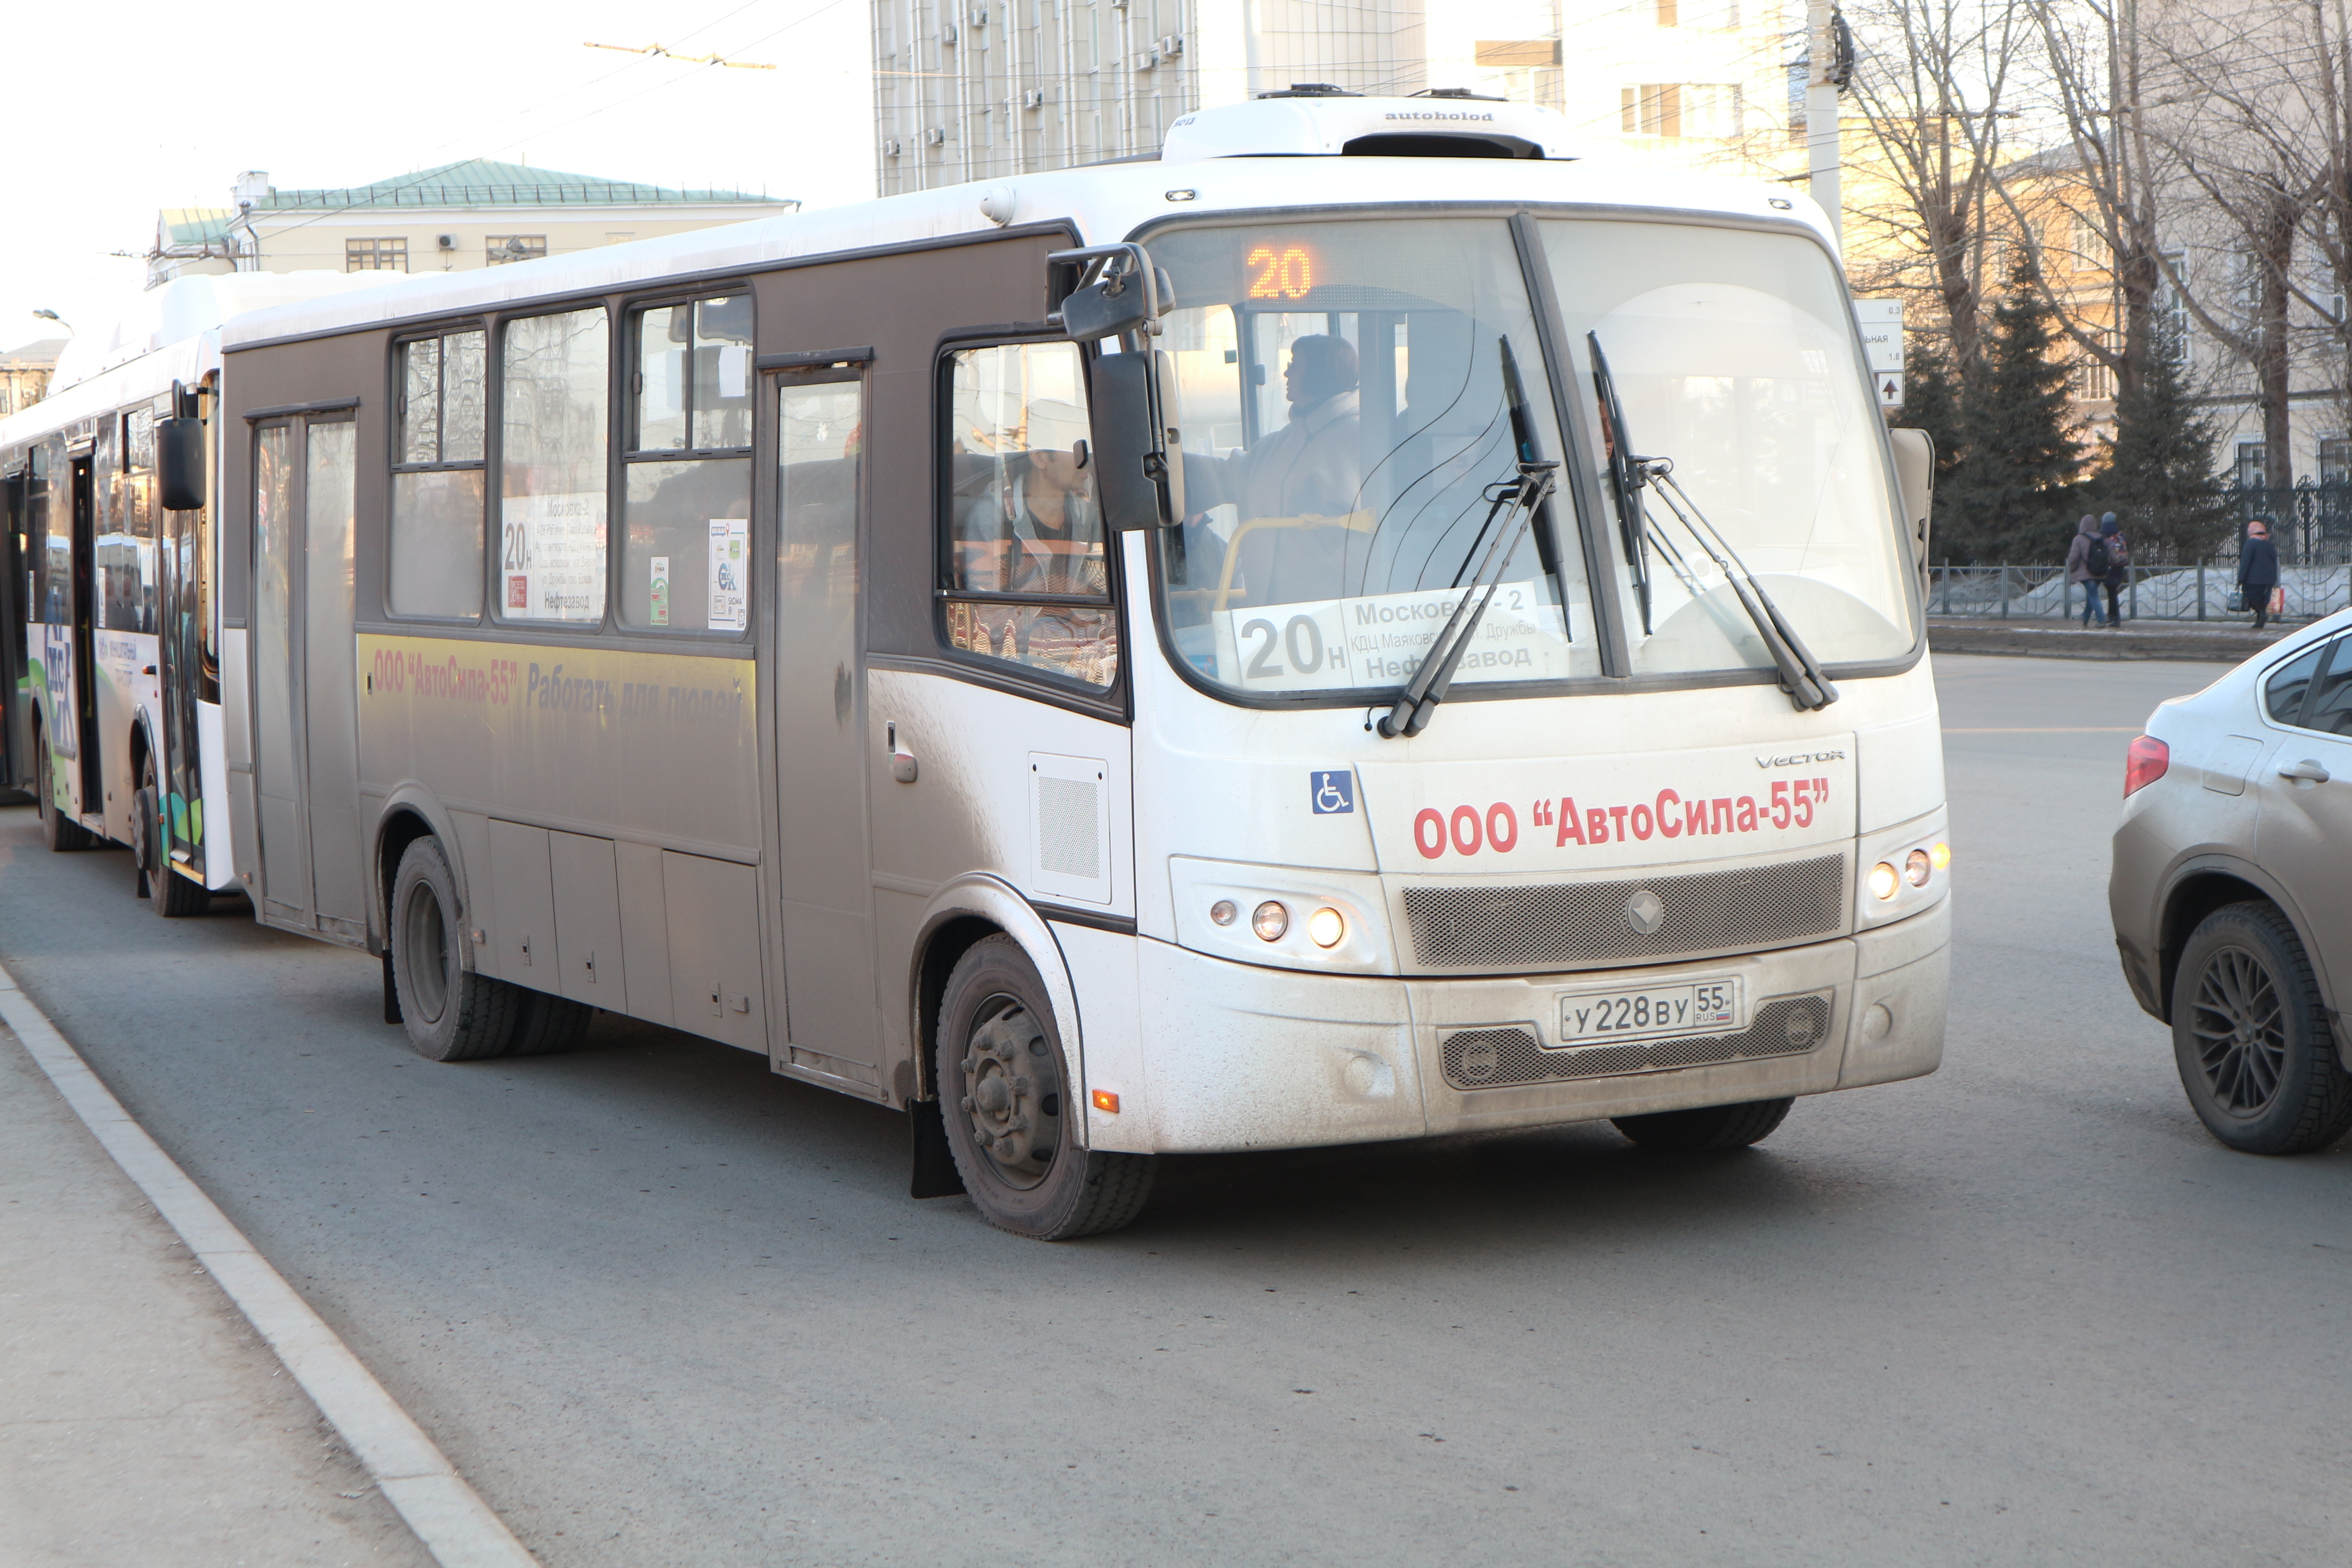 РЭК подняла «АвтоСиле-55» тариф на перевозки до 25.7 рубля за поездку